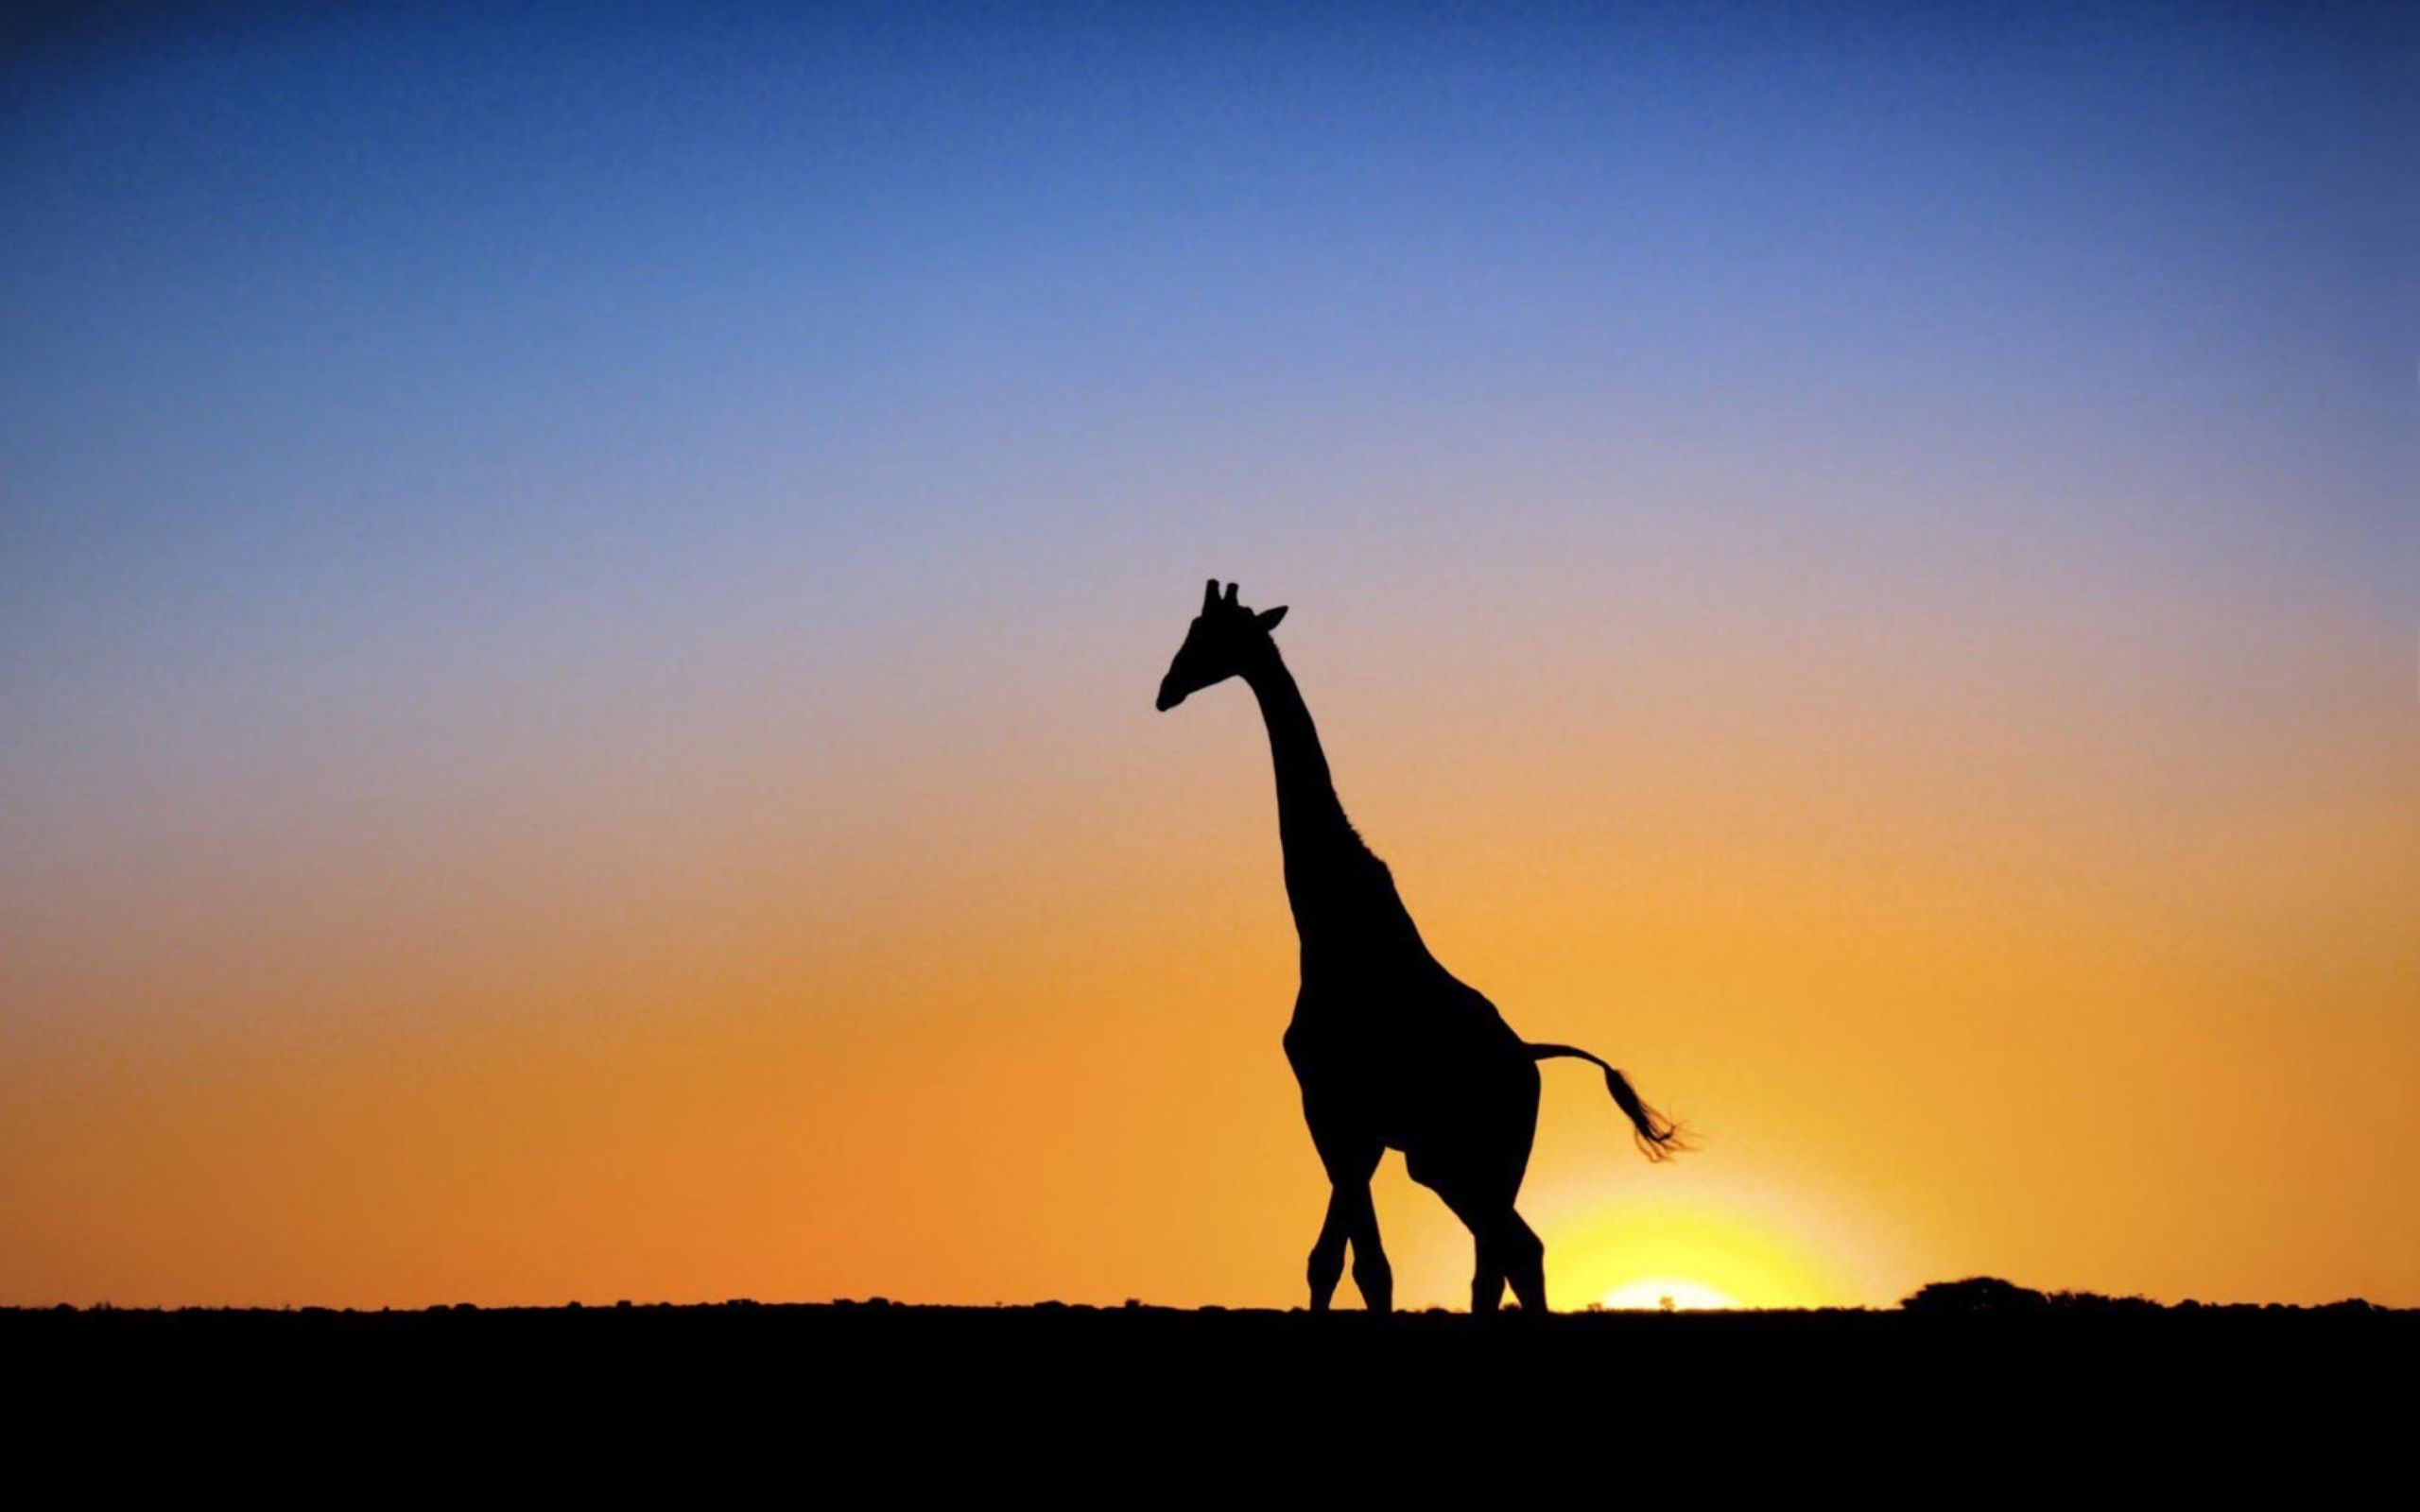 Safari At Sunset - Giraffe's Silhouette screenshot #1 2560x1600